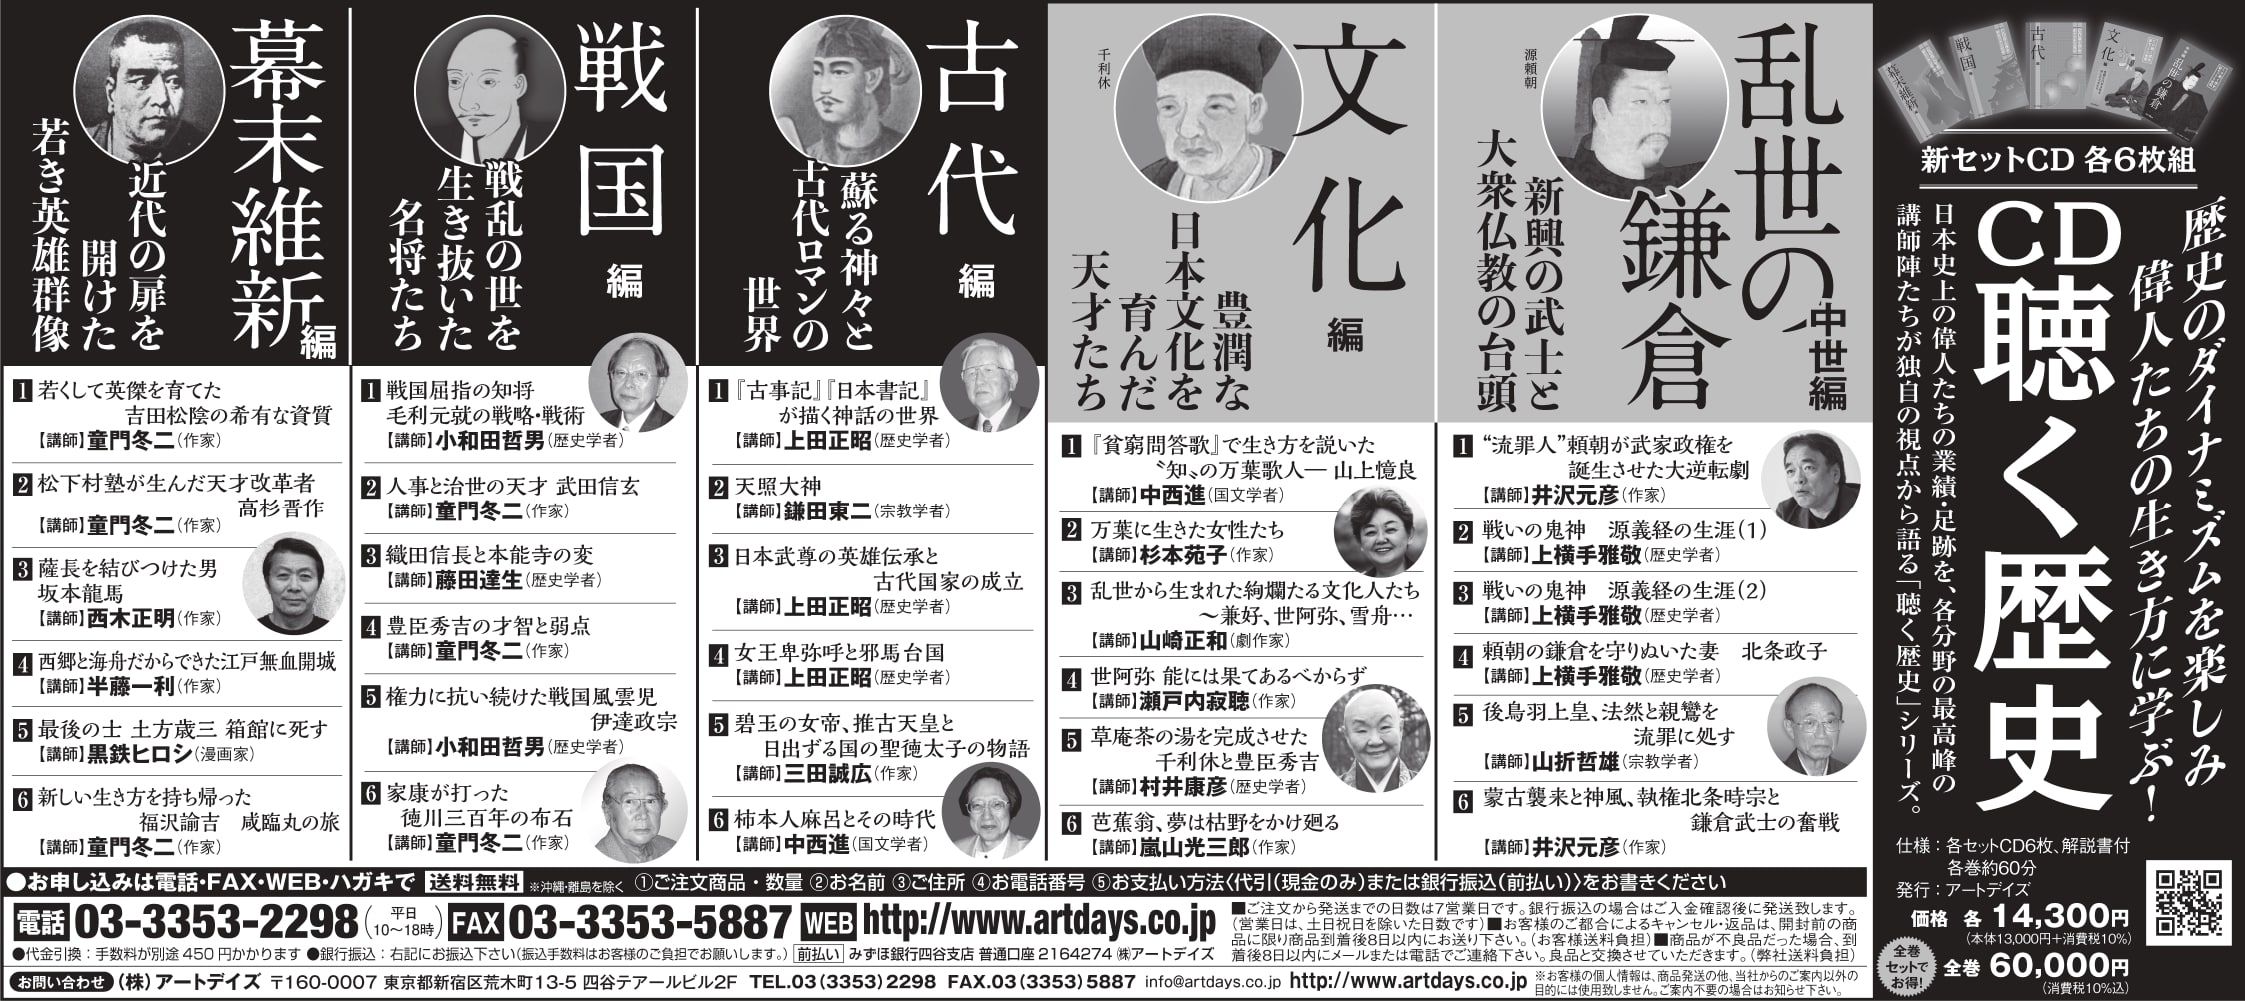 9月8日日本経済新聞に「CD聴く歴史」シリーズの広告を掲載しました。